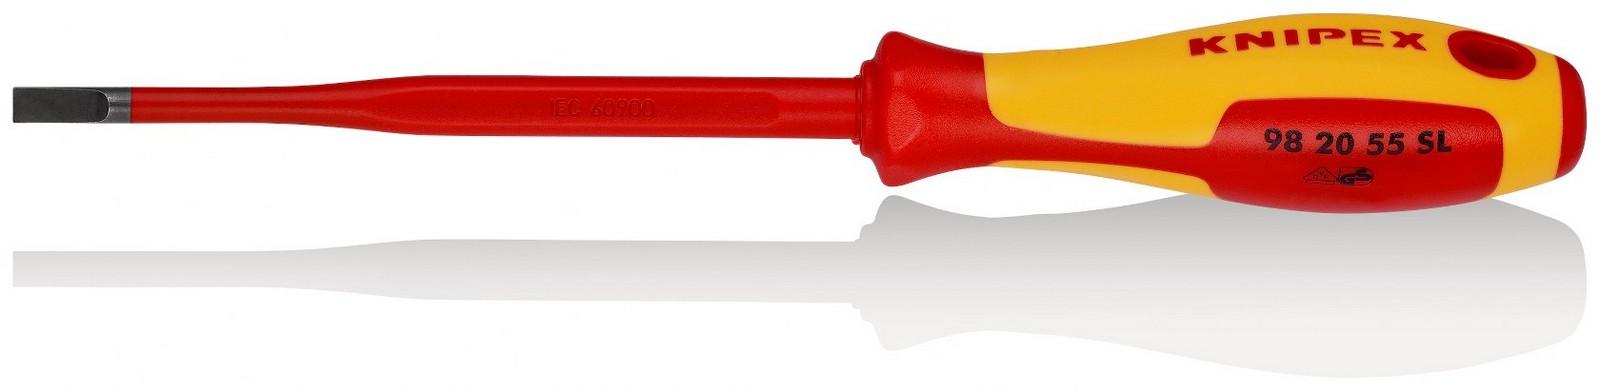 KNIPEX Odvijač Slim ravni 1000V VDE 5.5mm 98 20 55 SL crveno-žuti